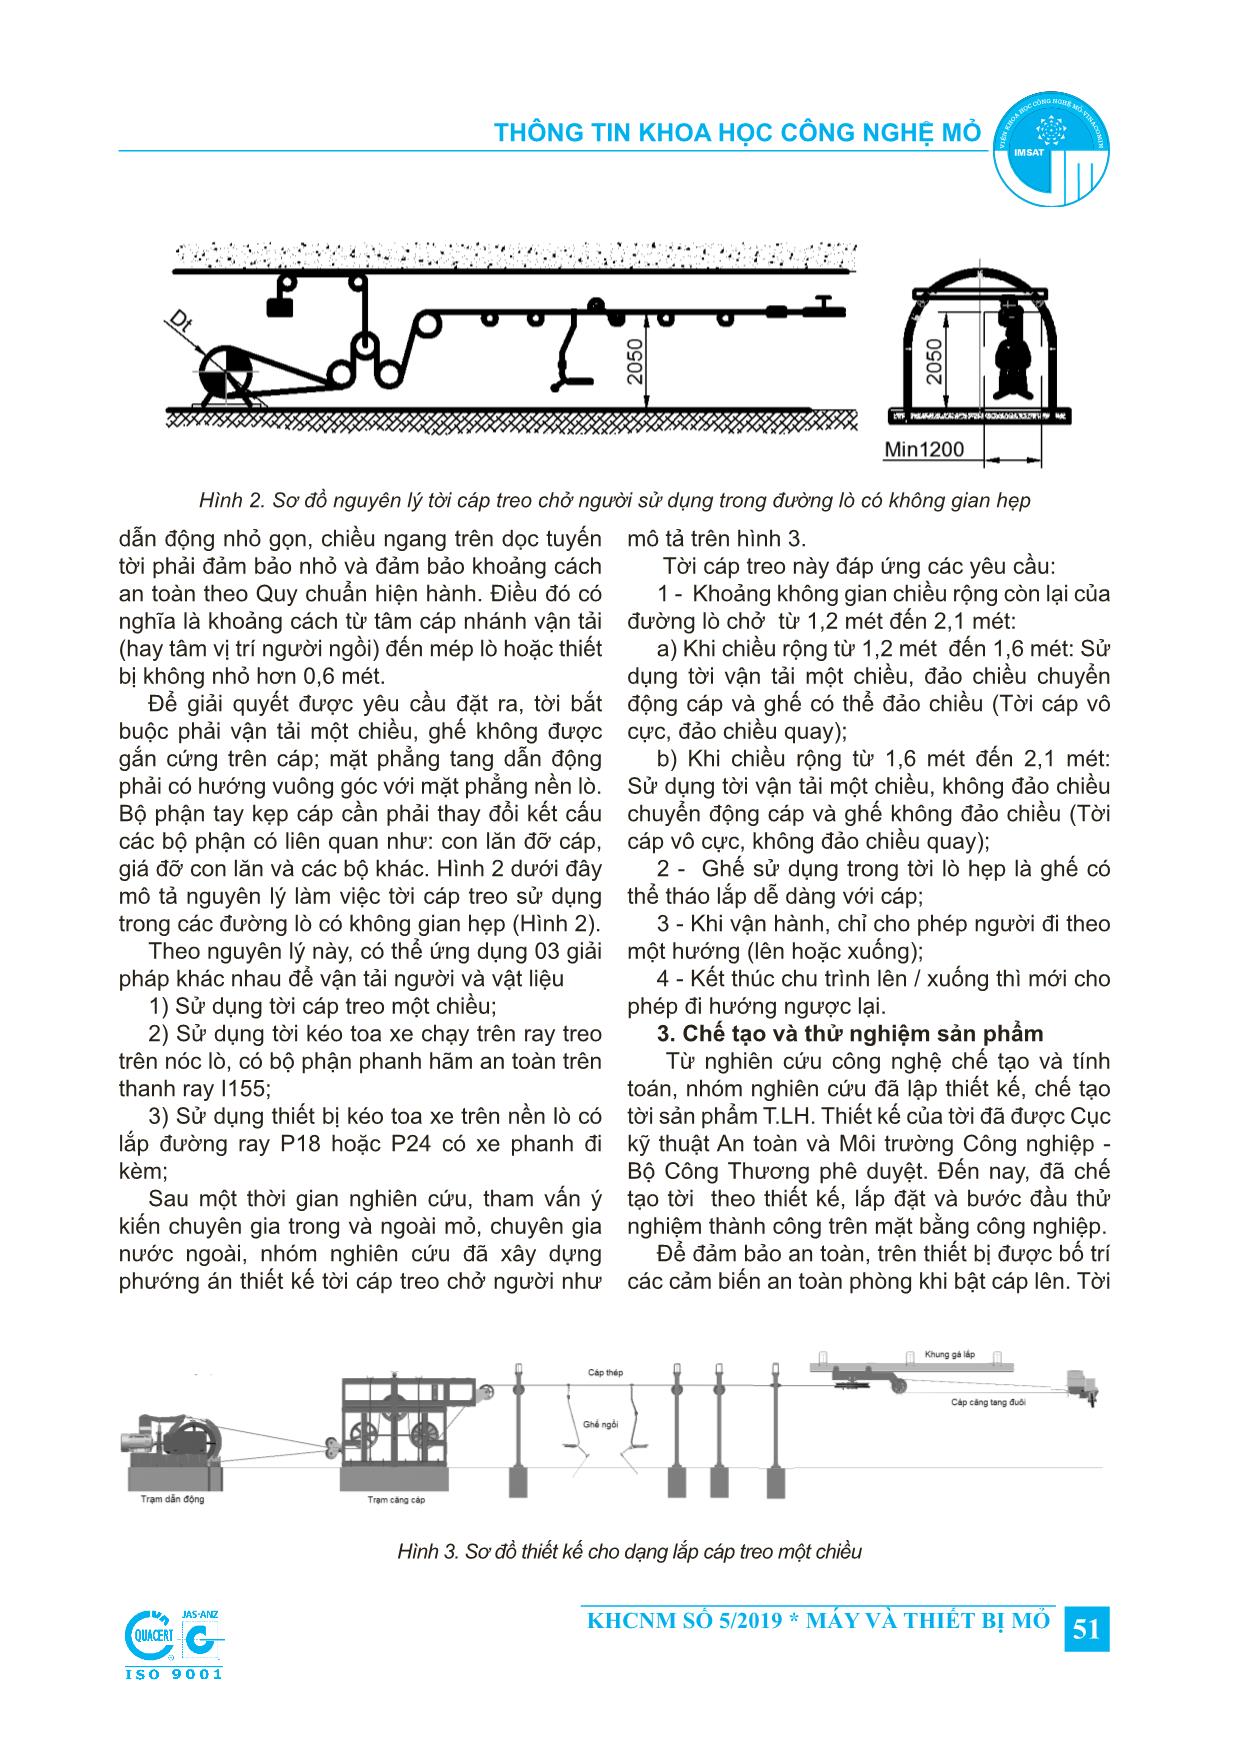 Thiết kế, chế tạo thử nghiệm tời cáp treo sử dụng trong các đường lò có không gian hẹp trang 2